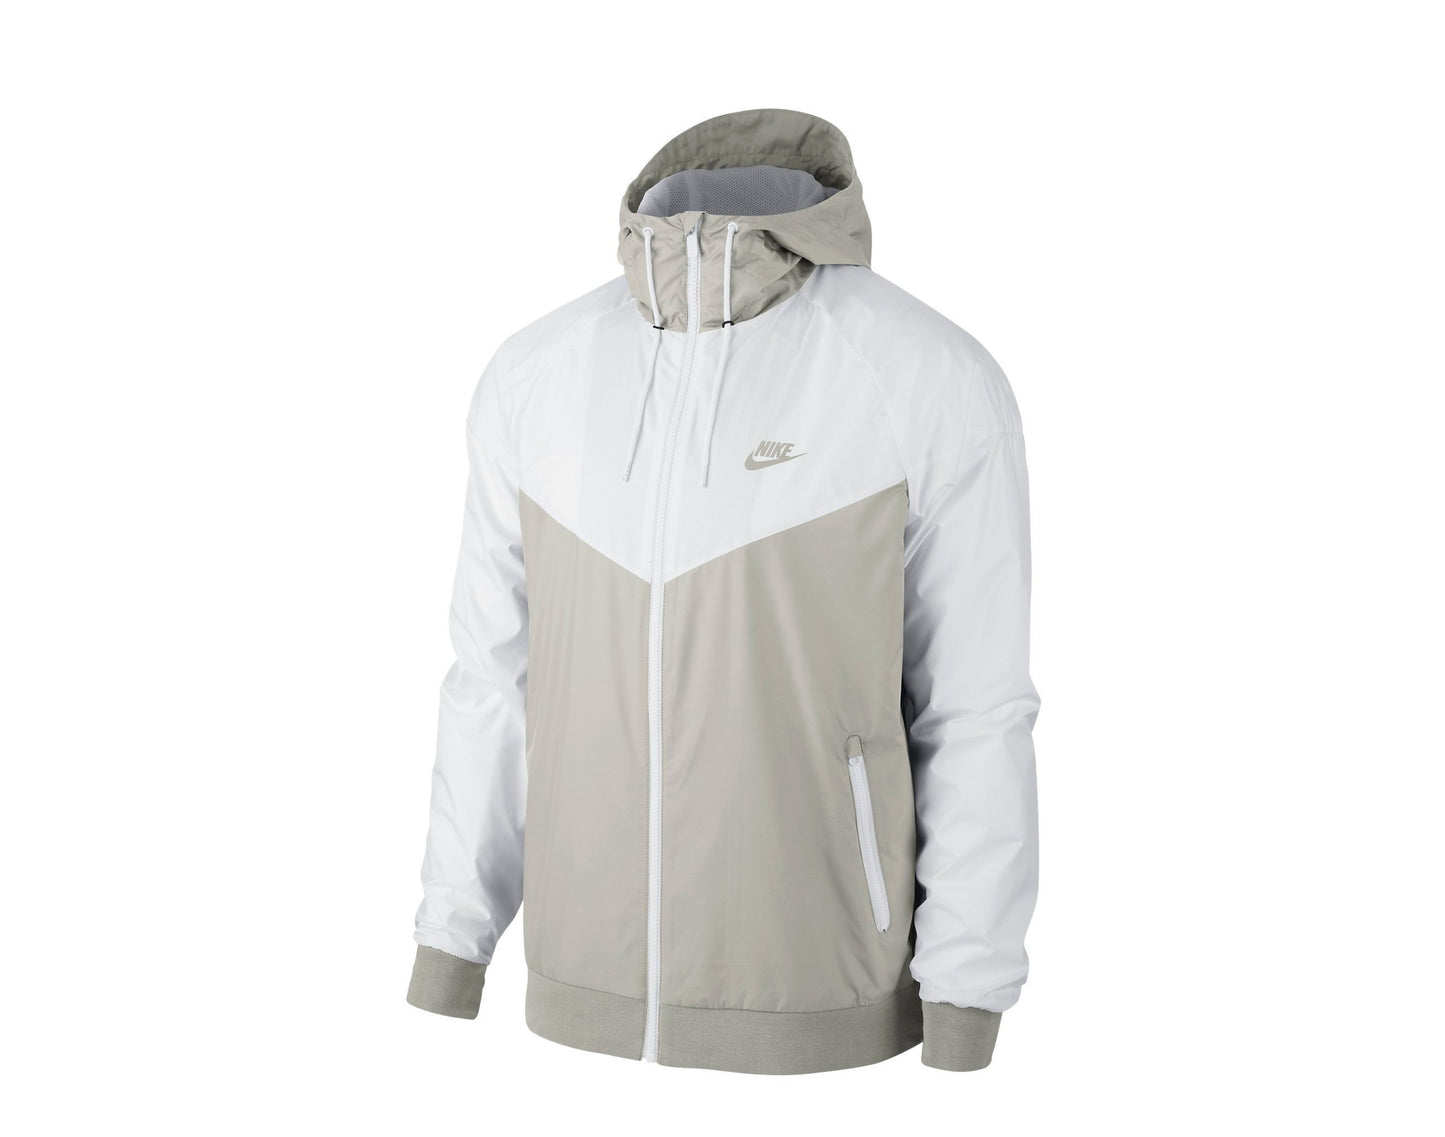 Nike Sportswear Windrunner Windbreaker Men's Jacket